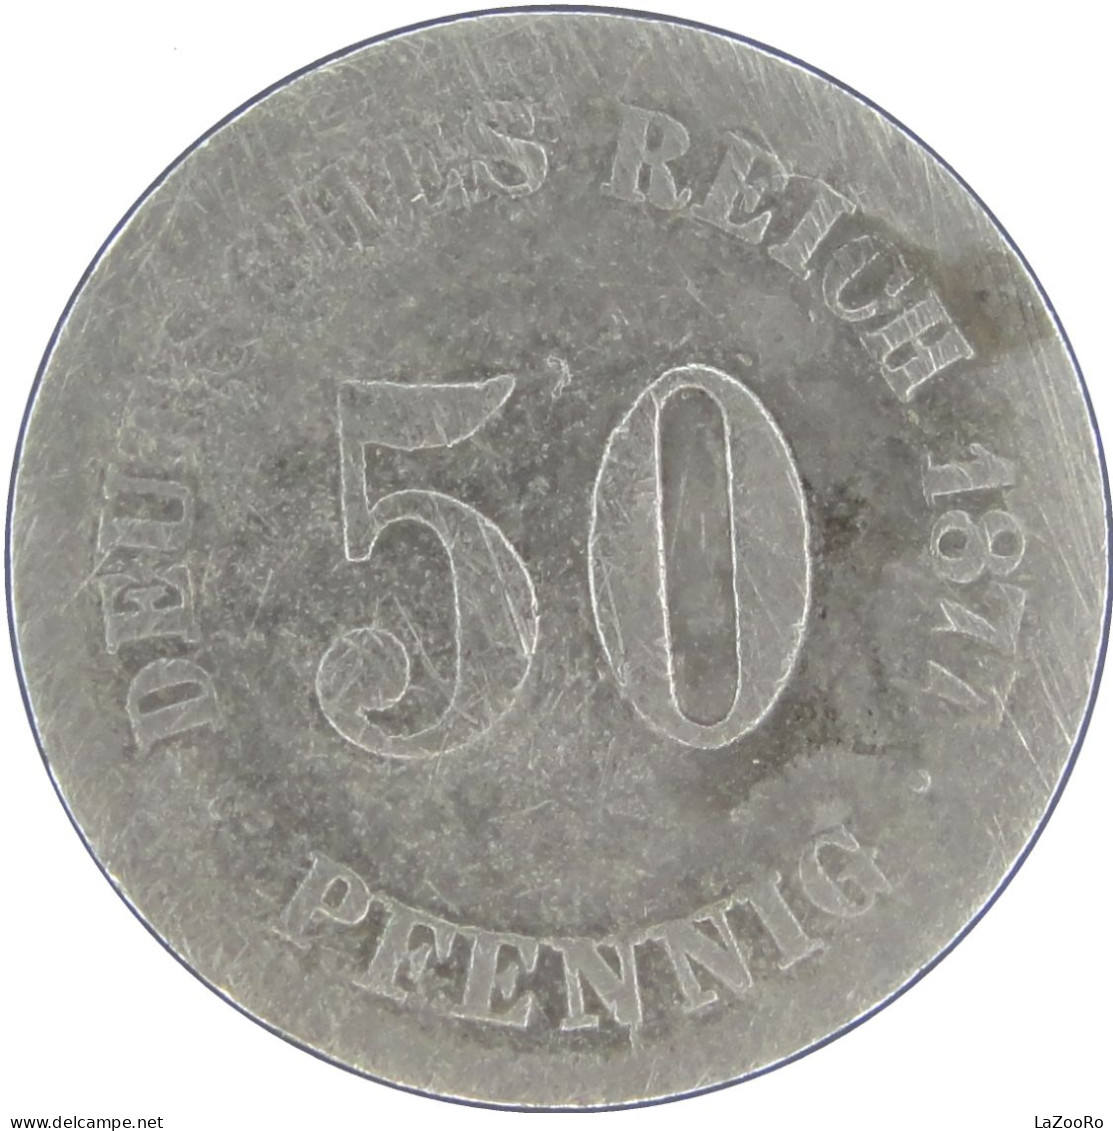 LaZooRo: Germany 50 Pfennig 1877 C VG / F - Silver - 50 Pfennig